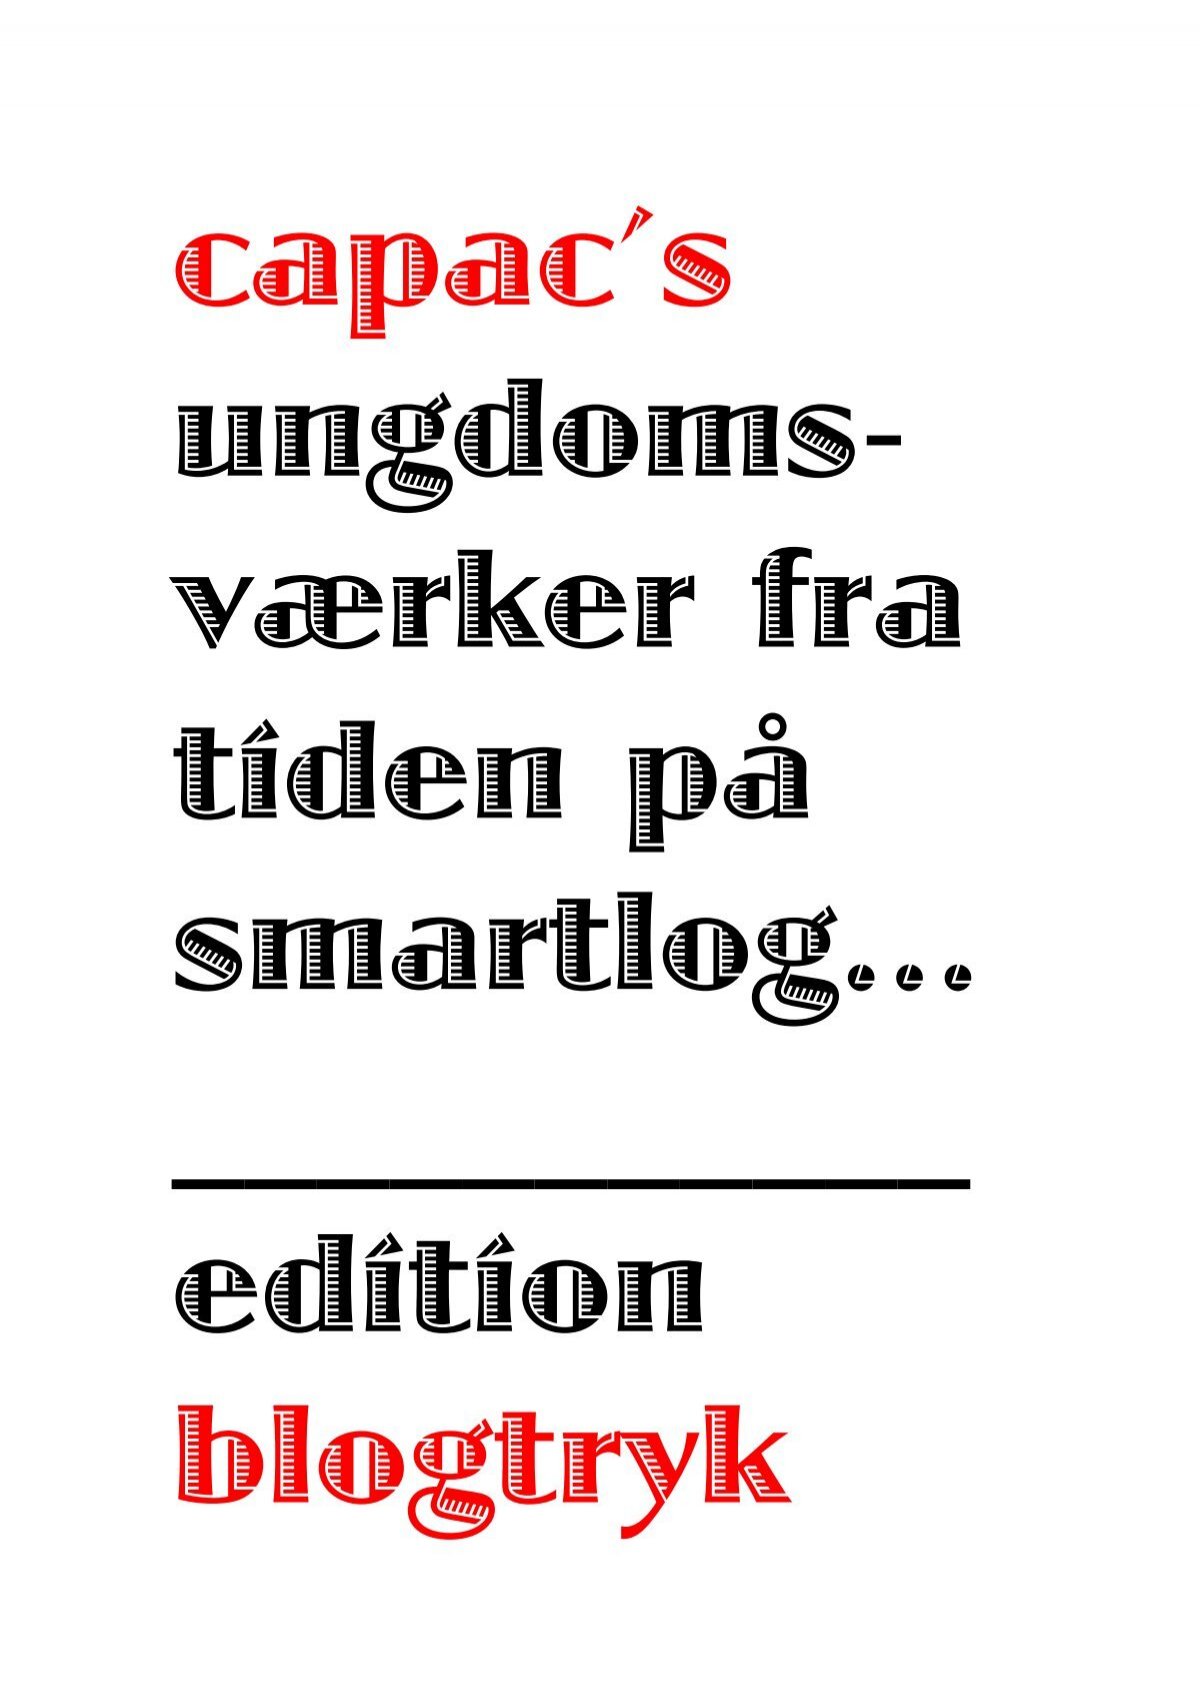 www.capac.smartlog.dk er en space! (museum)